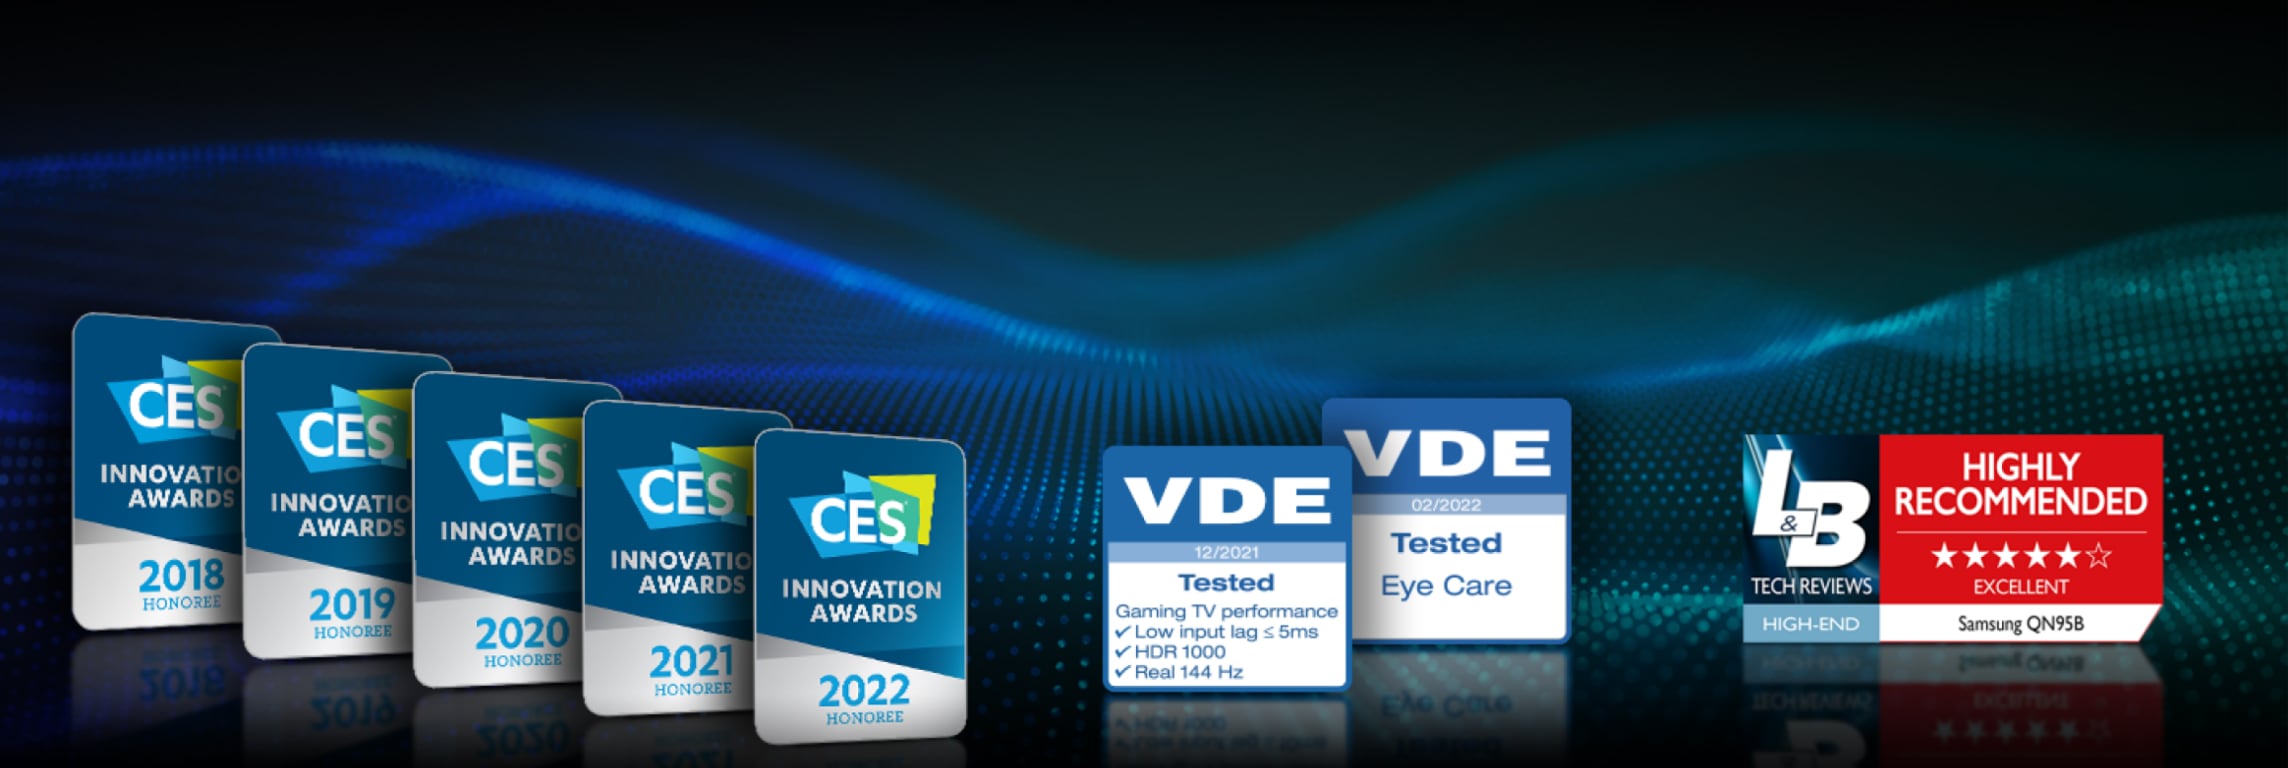 Samsung Gaming TV-priser på linje med CES Innovasjonspriser 2022, VDE-testet og L&B anbefaling